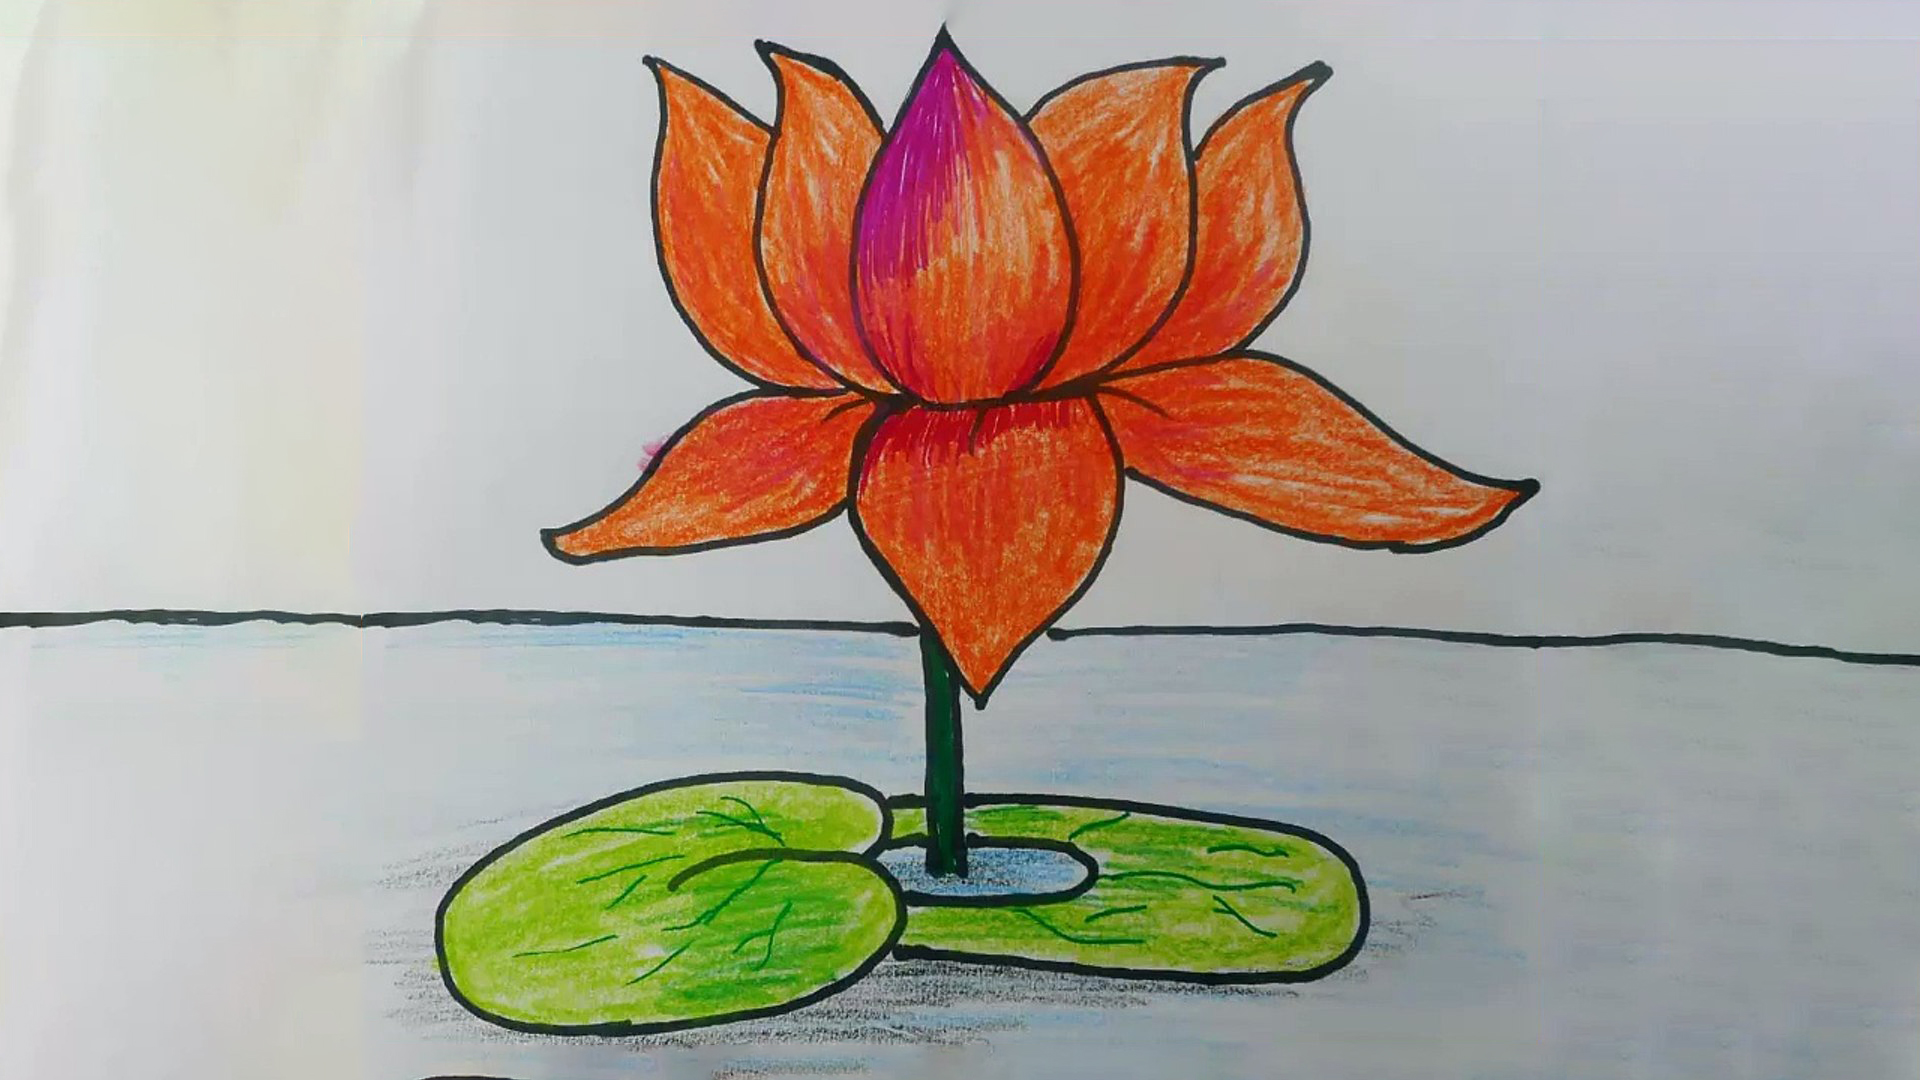 Hướng dẫn cách vẽ bông hoa sen đẹp đơn giản với 8 bước cơ bản